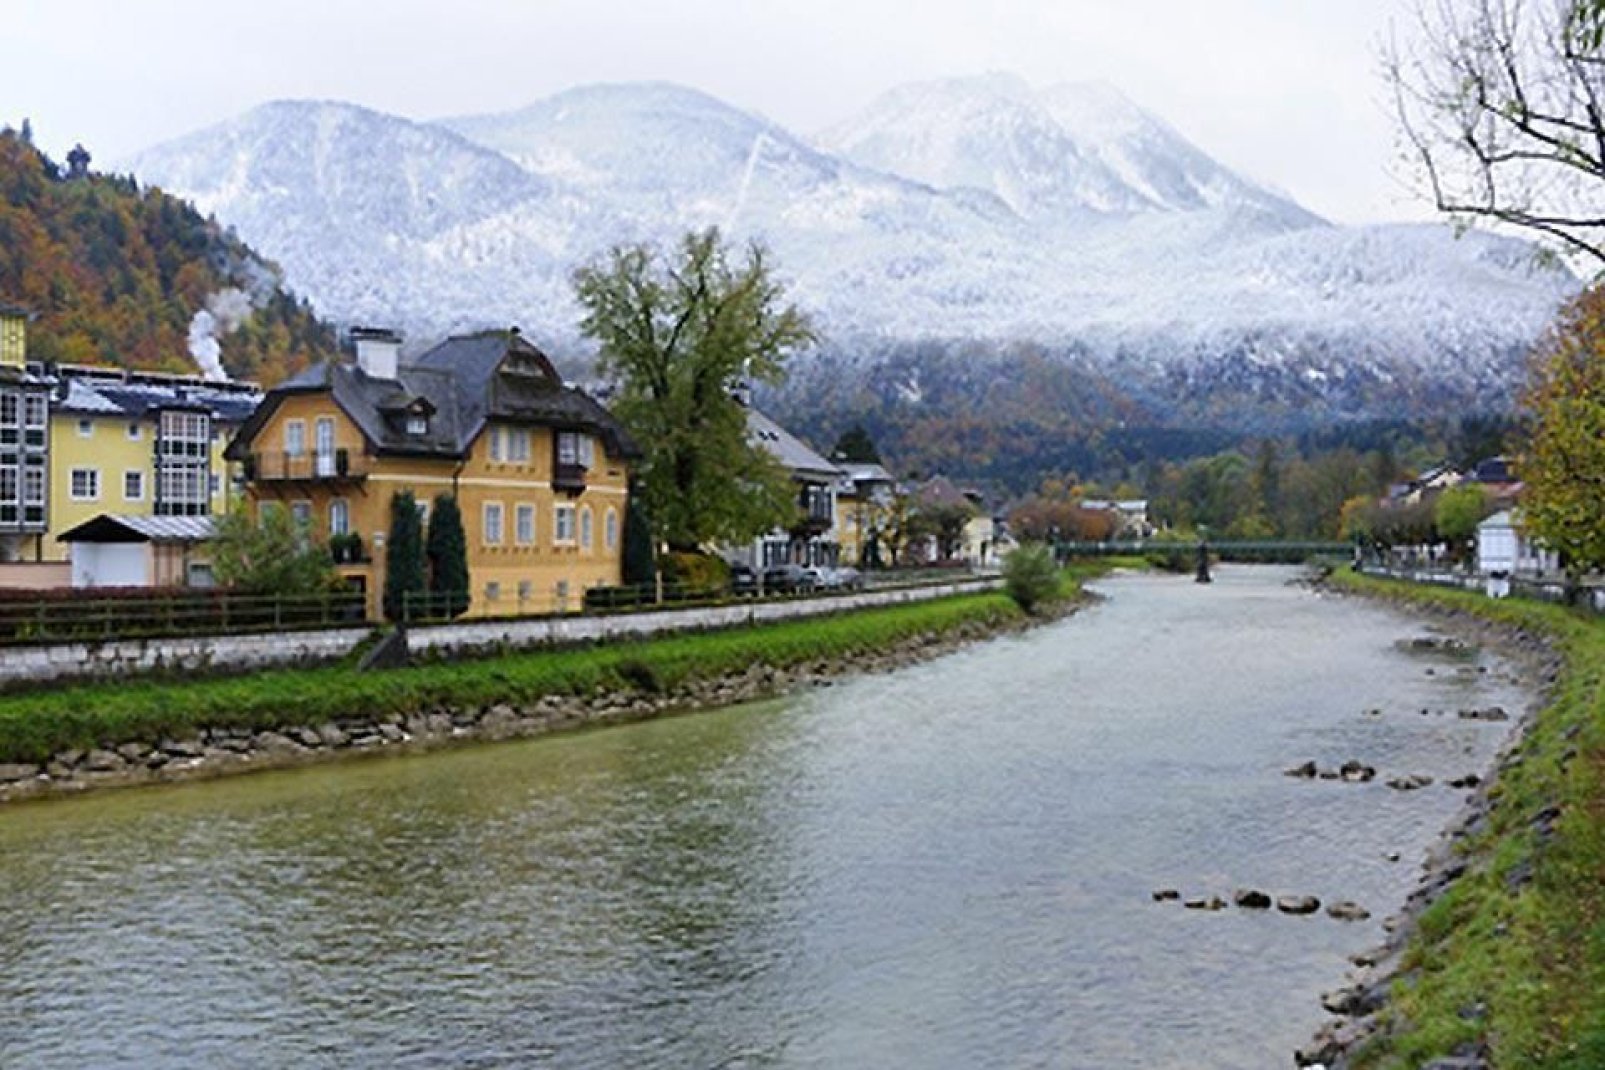 Das österreichische Kaiserehepaar (Franz-Josef und Sissi) verbrachte zahlreiche Badeaufenthalte in diesem Ort, der nach dem vorbeiführenden Fluss Ischl benannt ist.